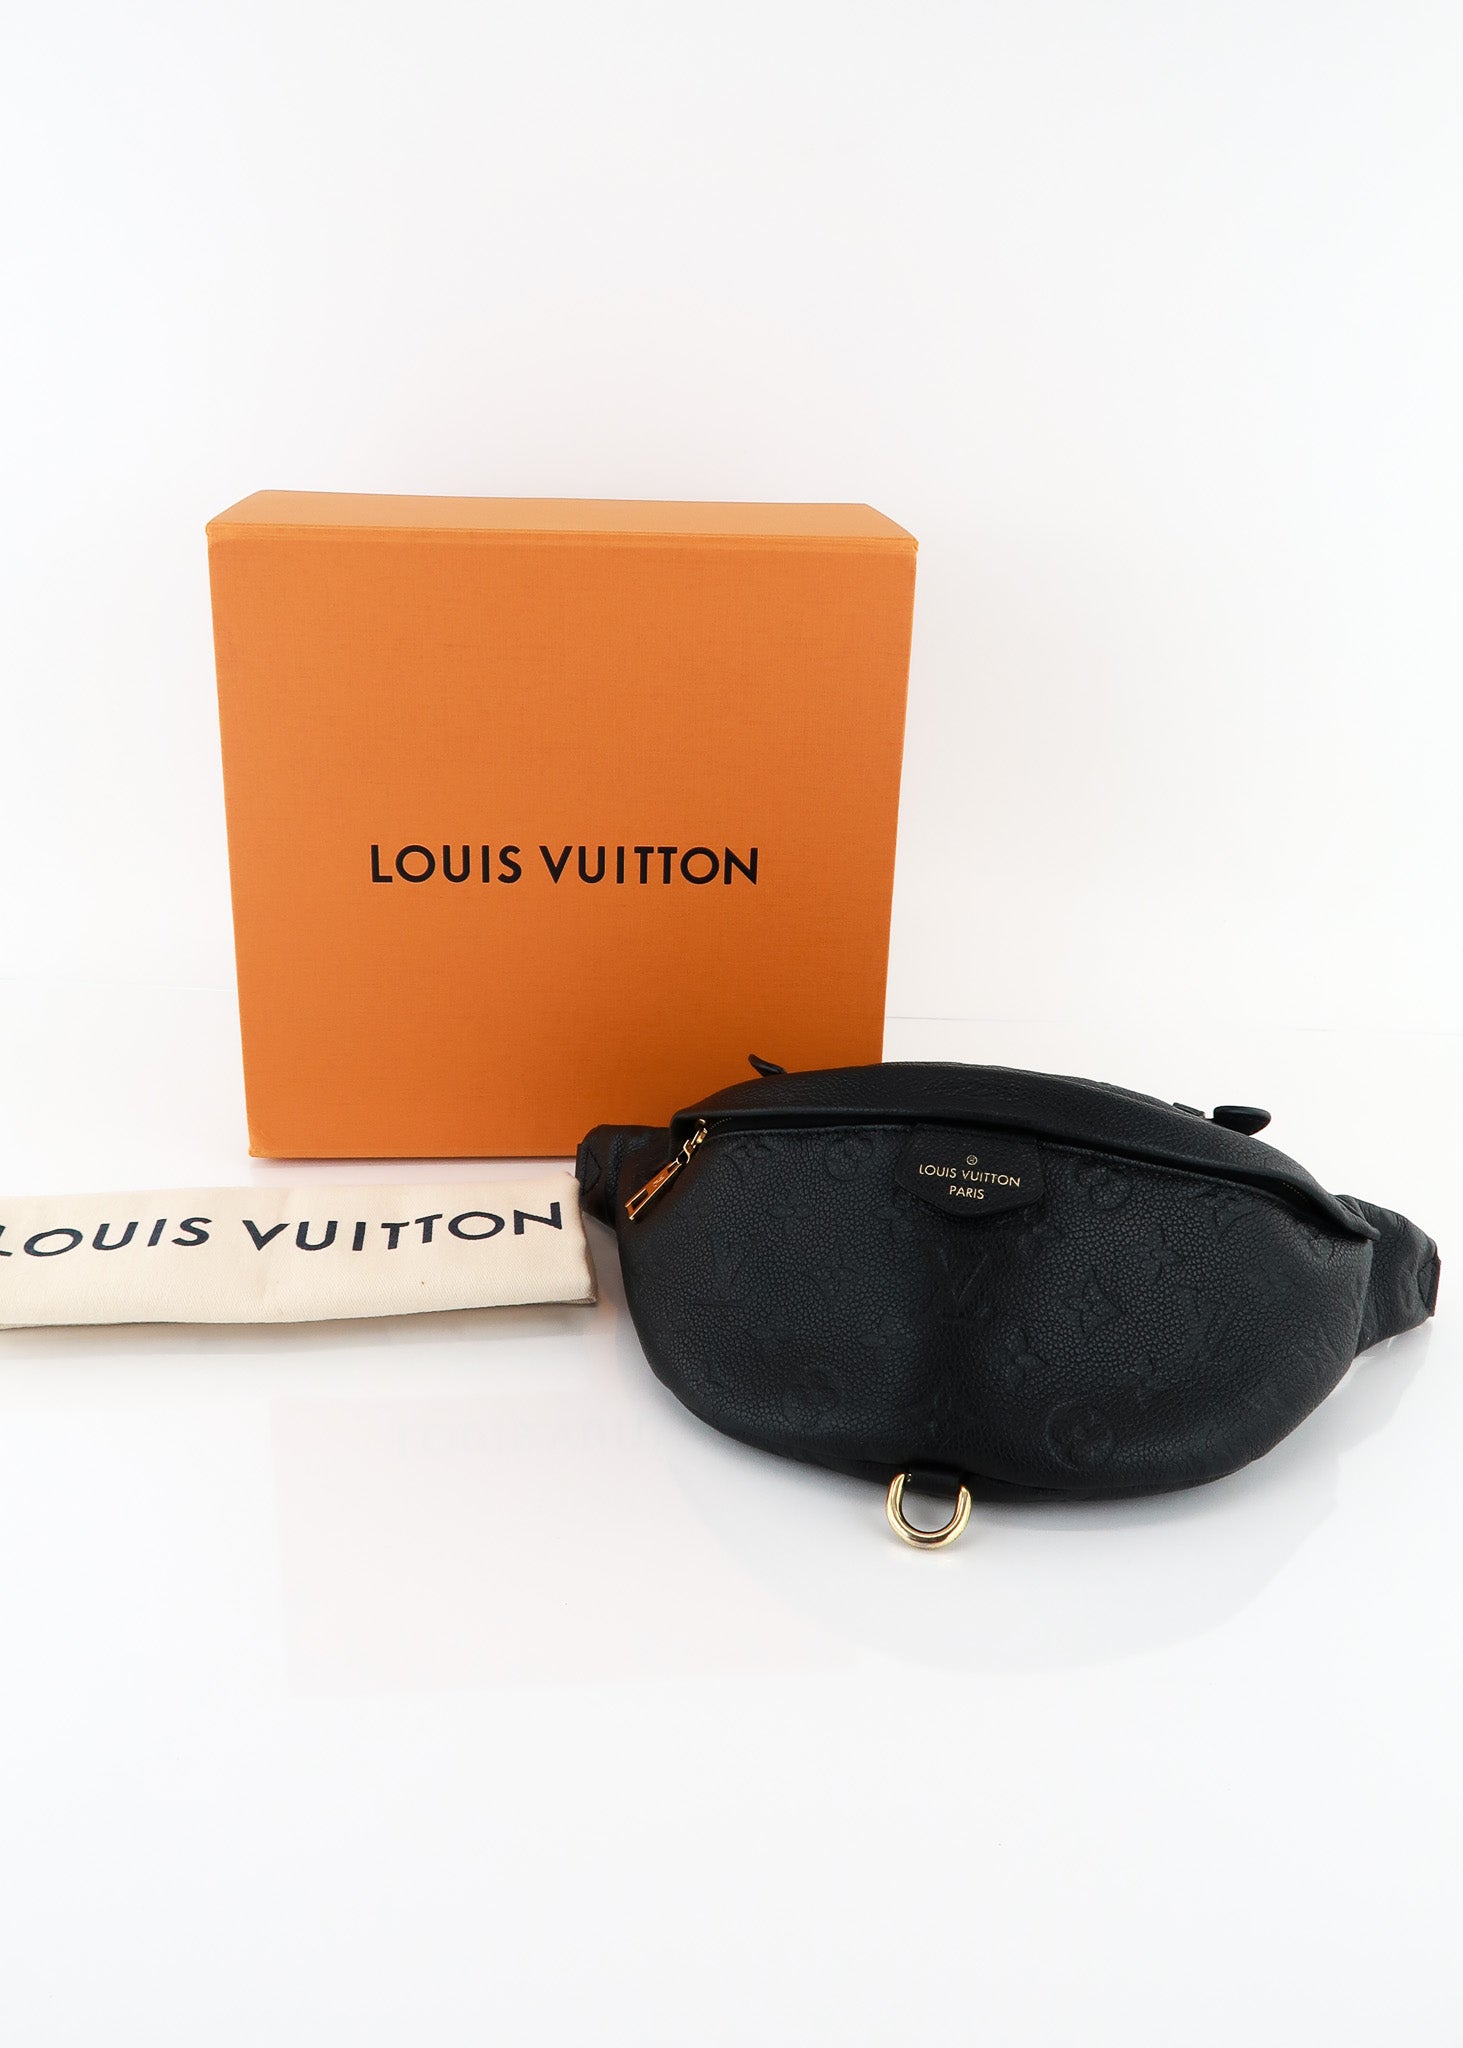 Louis Vuitton Empreinte Bumbag